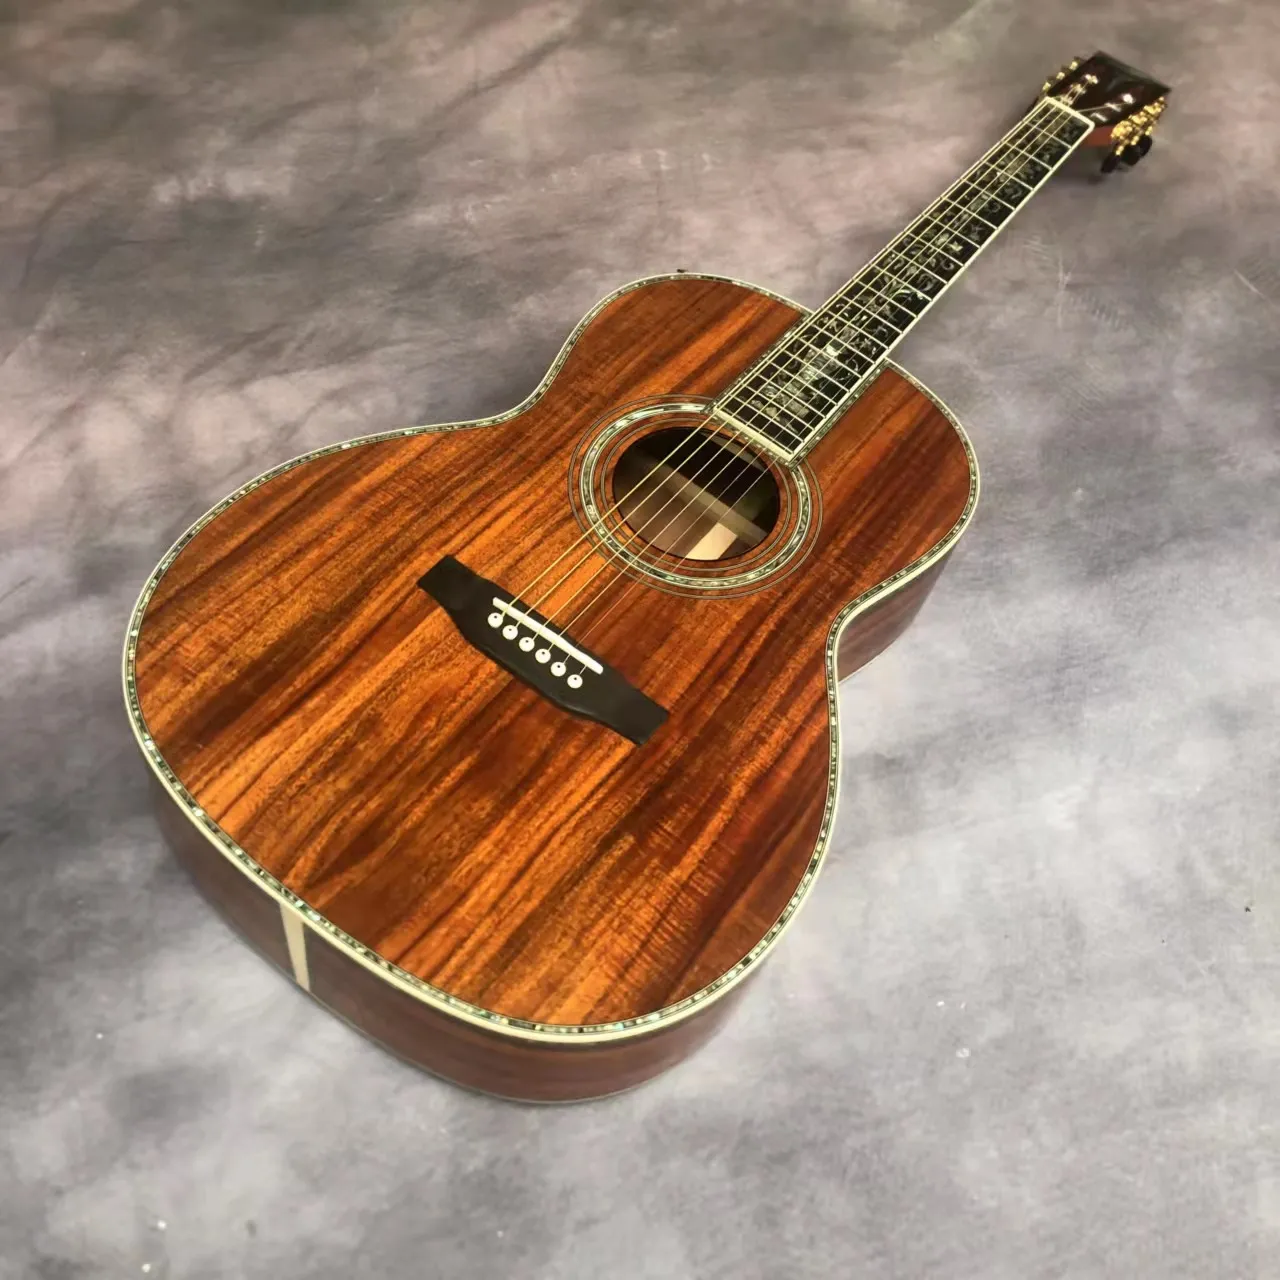 39 "Pełny koa drewno 0045 luksusowy czarny palec abalone skorupa mozaika akustyczna gitara akustyczna